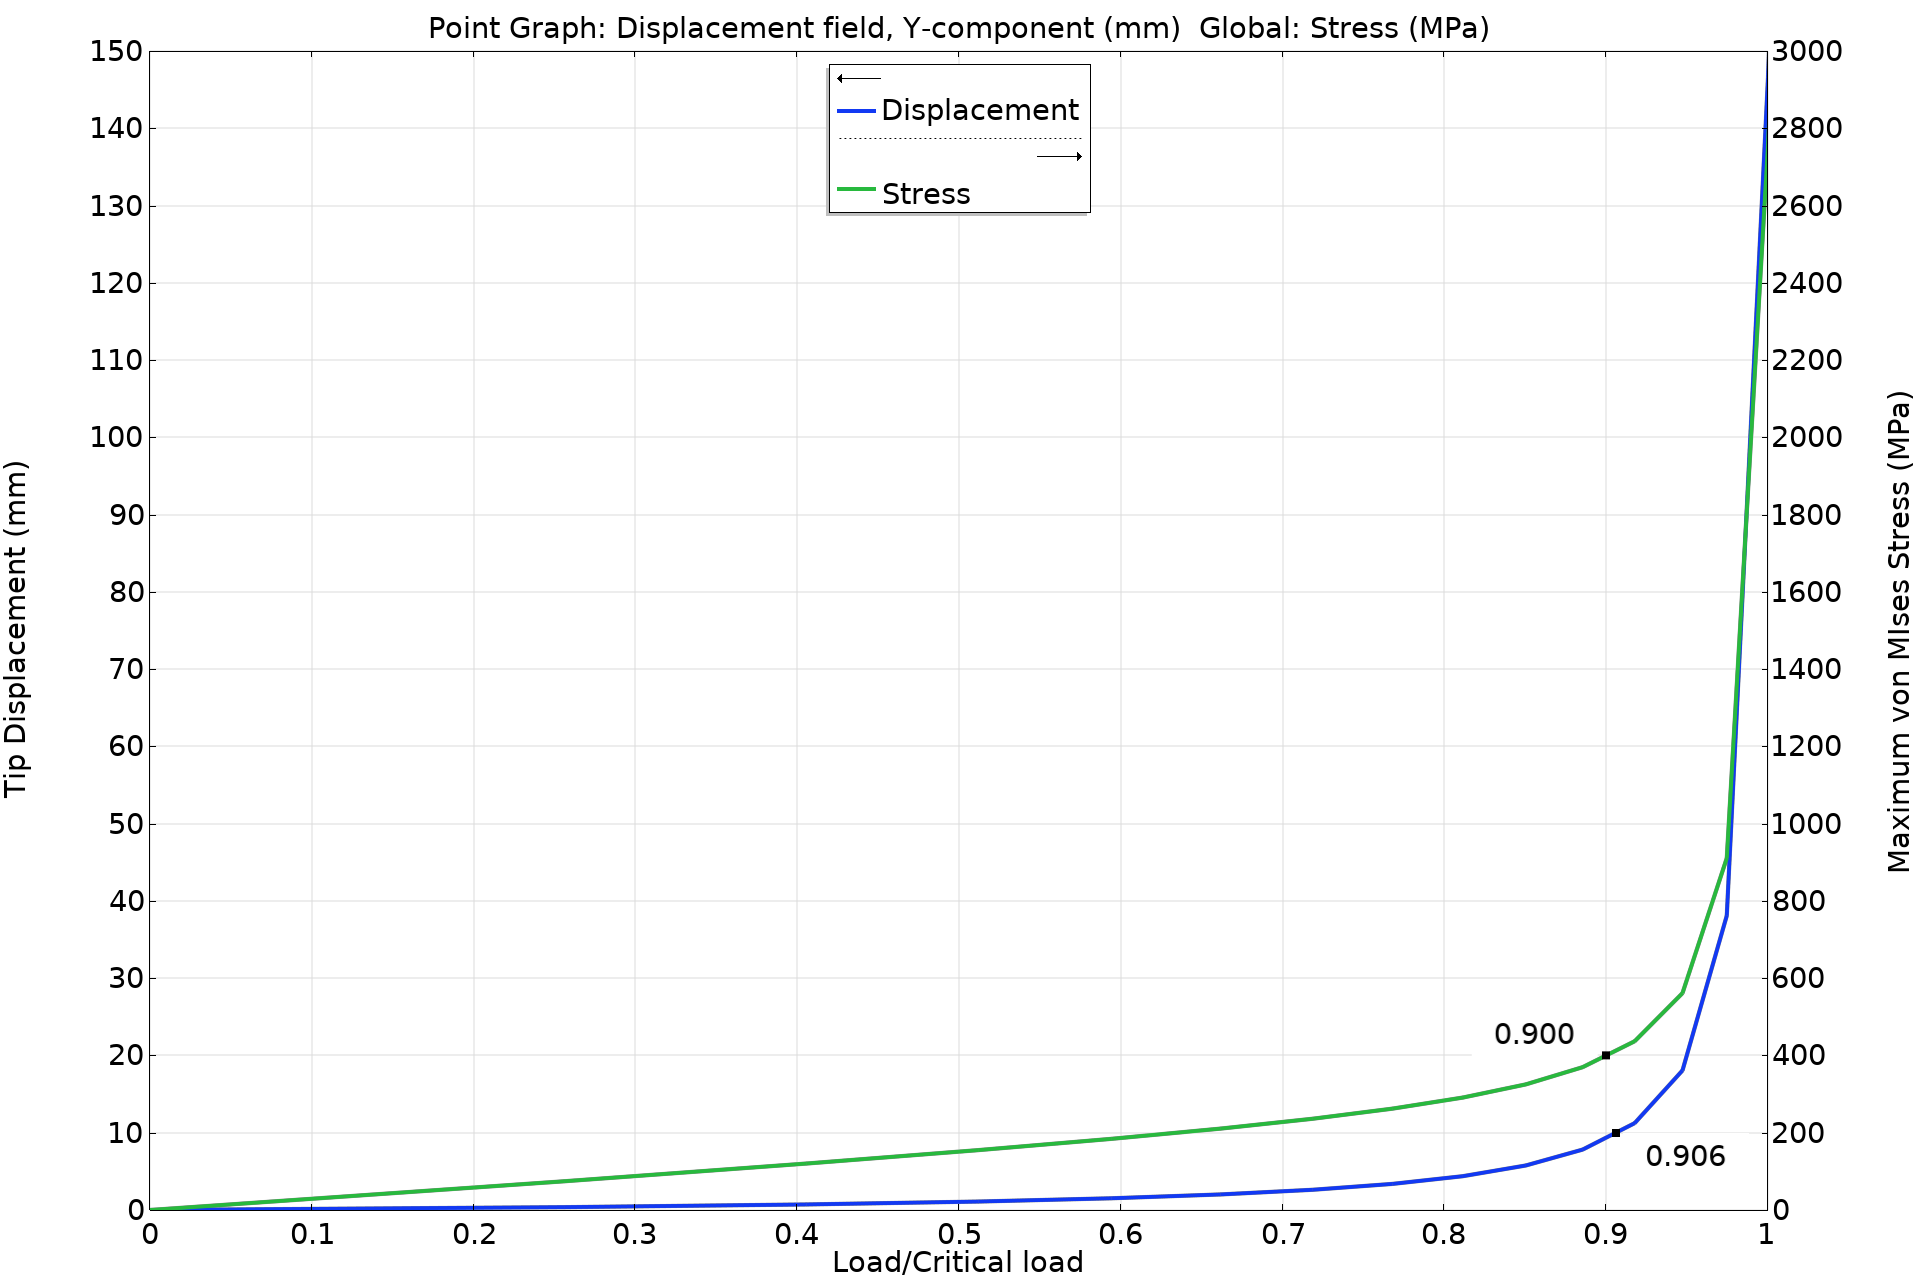 x 轴上的载荷/临界载荷和y轴上的尖端位移（mm）的 1D 图。